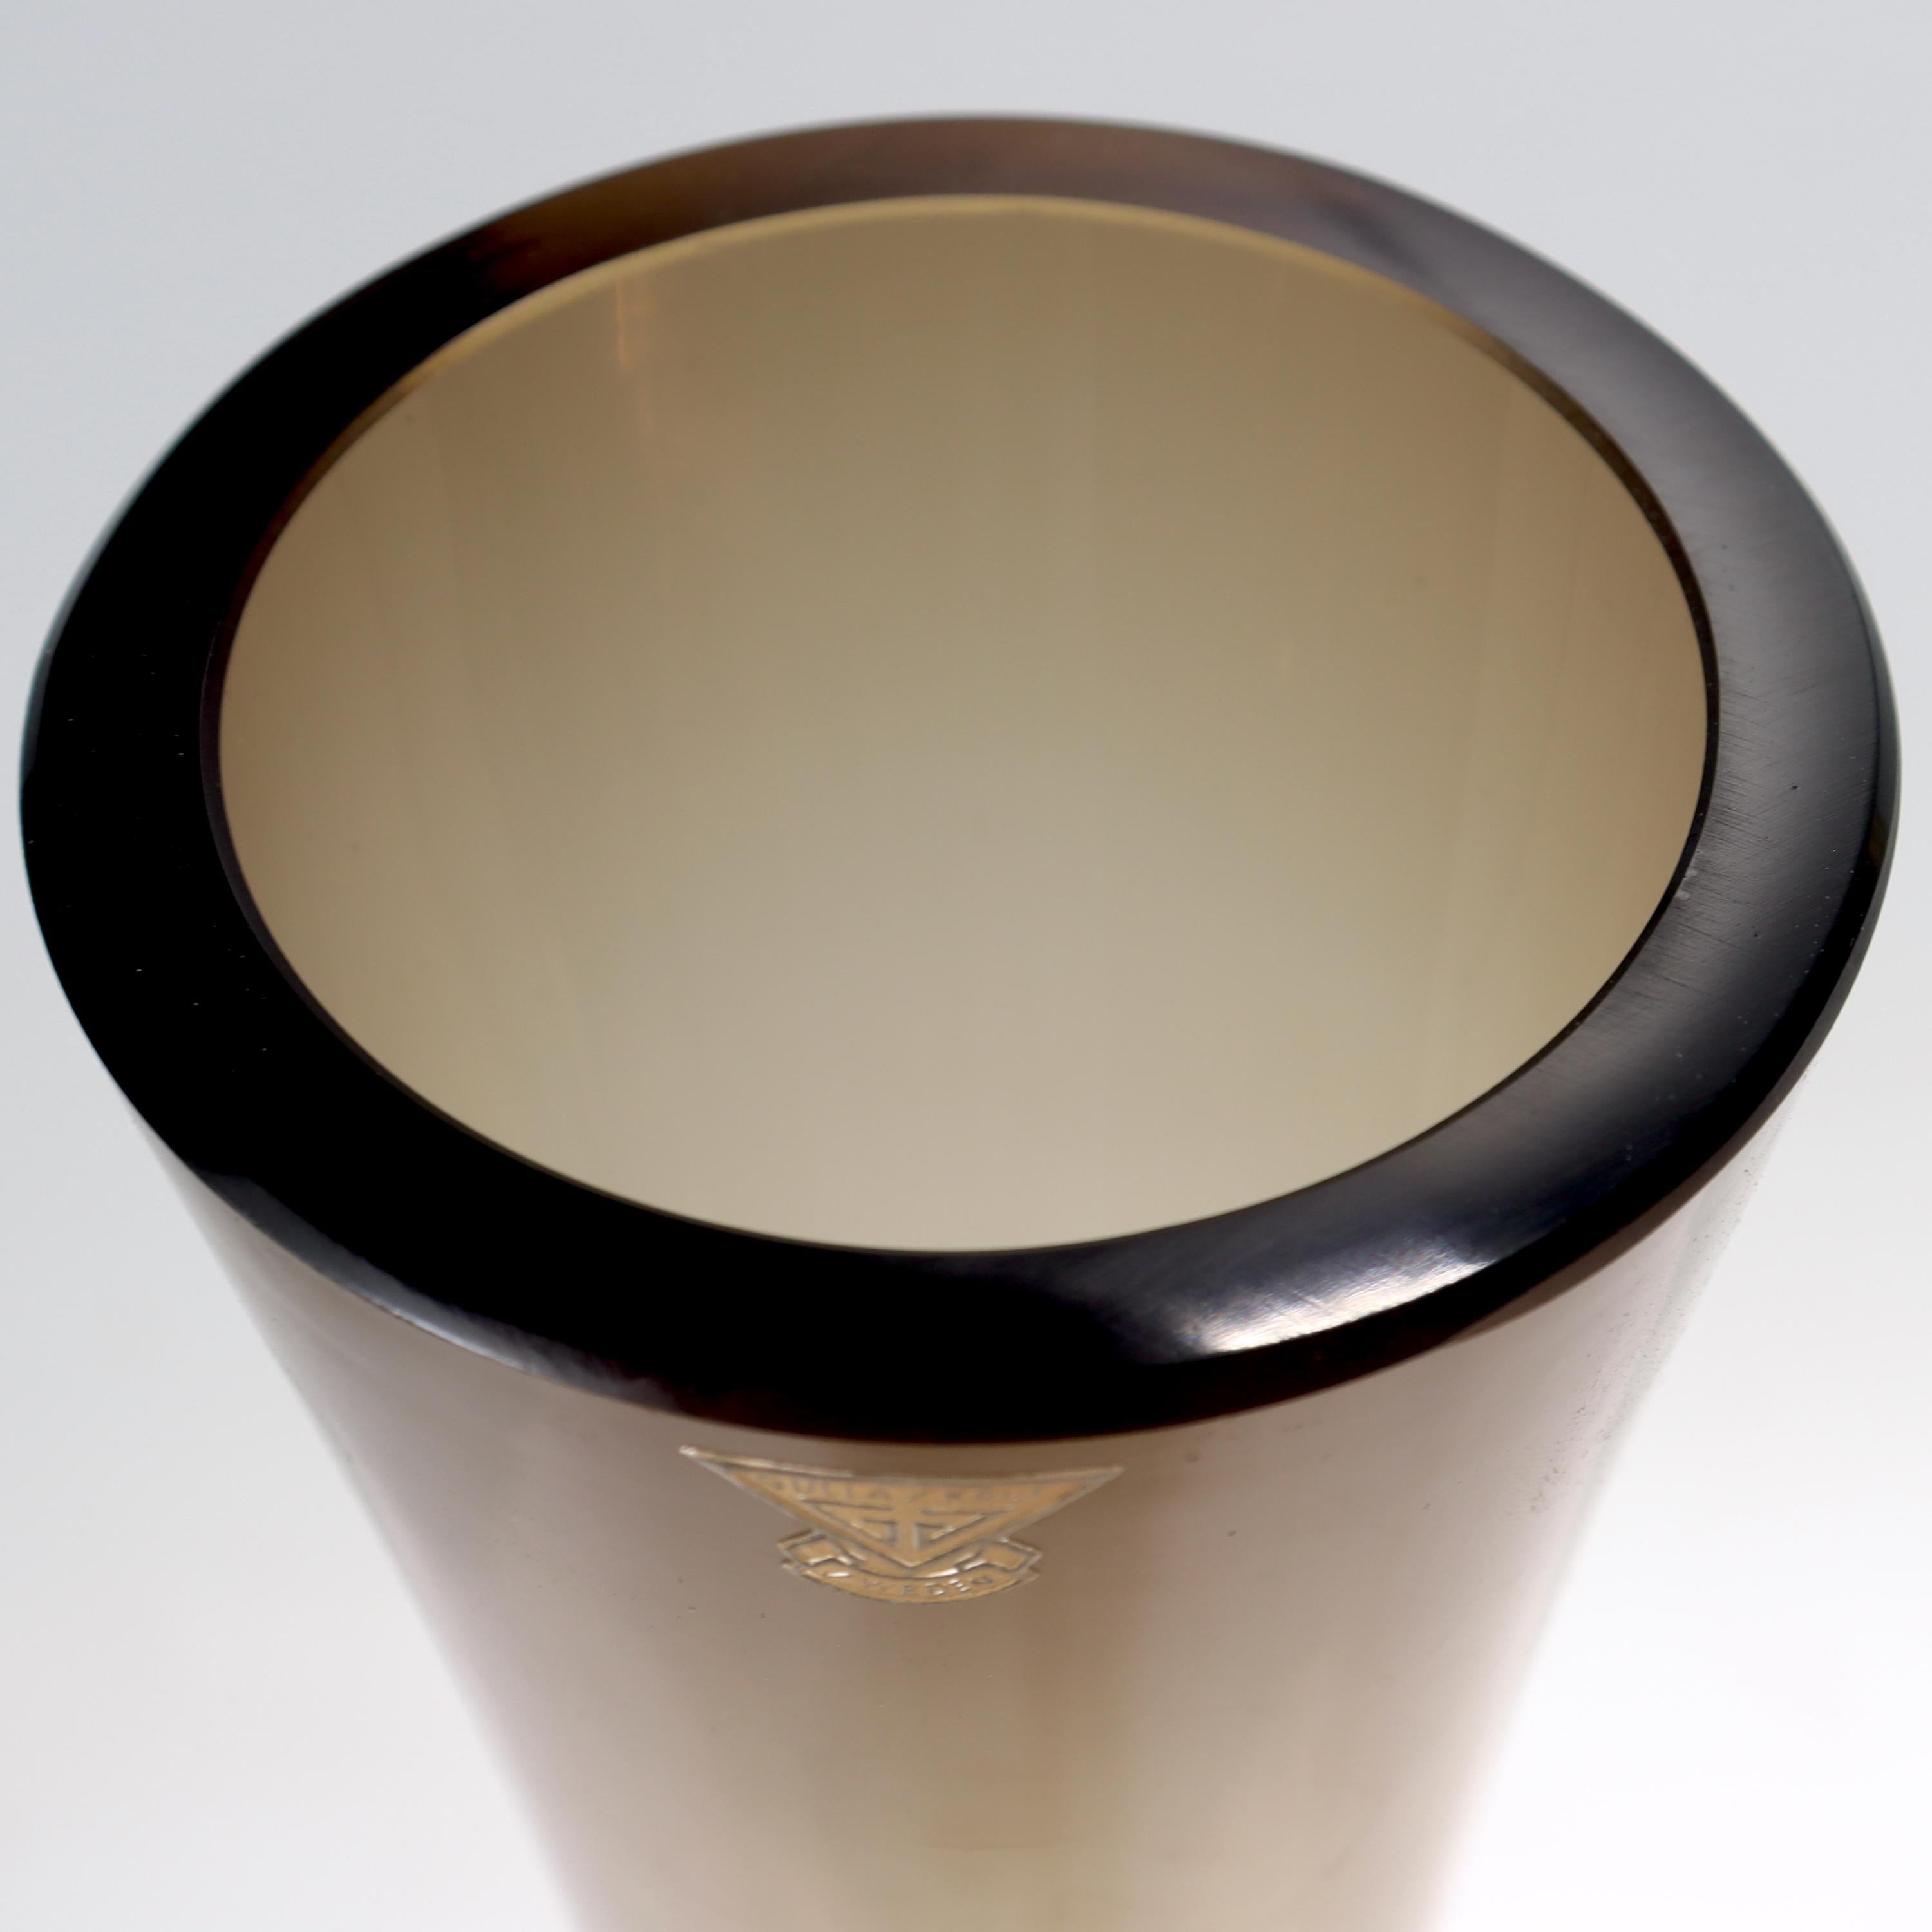 Very Large Labeled Gullaskruf Mid-Century Modern Swedish Art Glass Vase For Sale 1